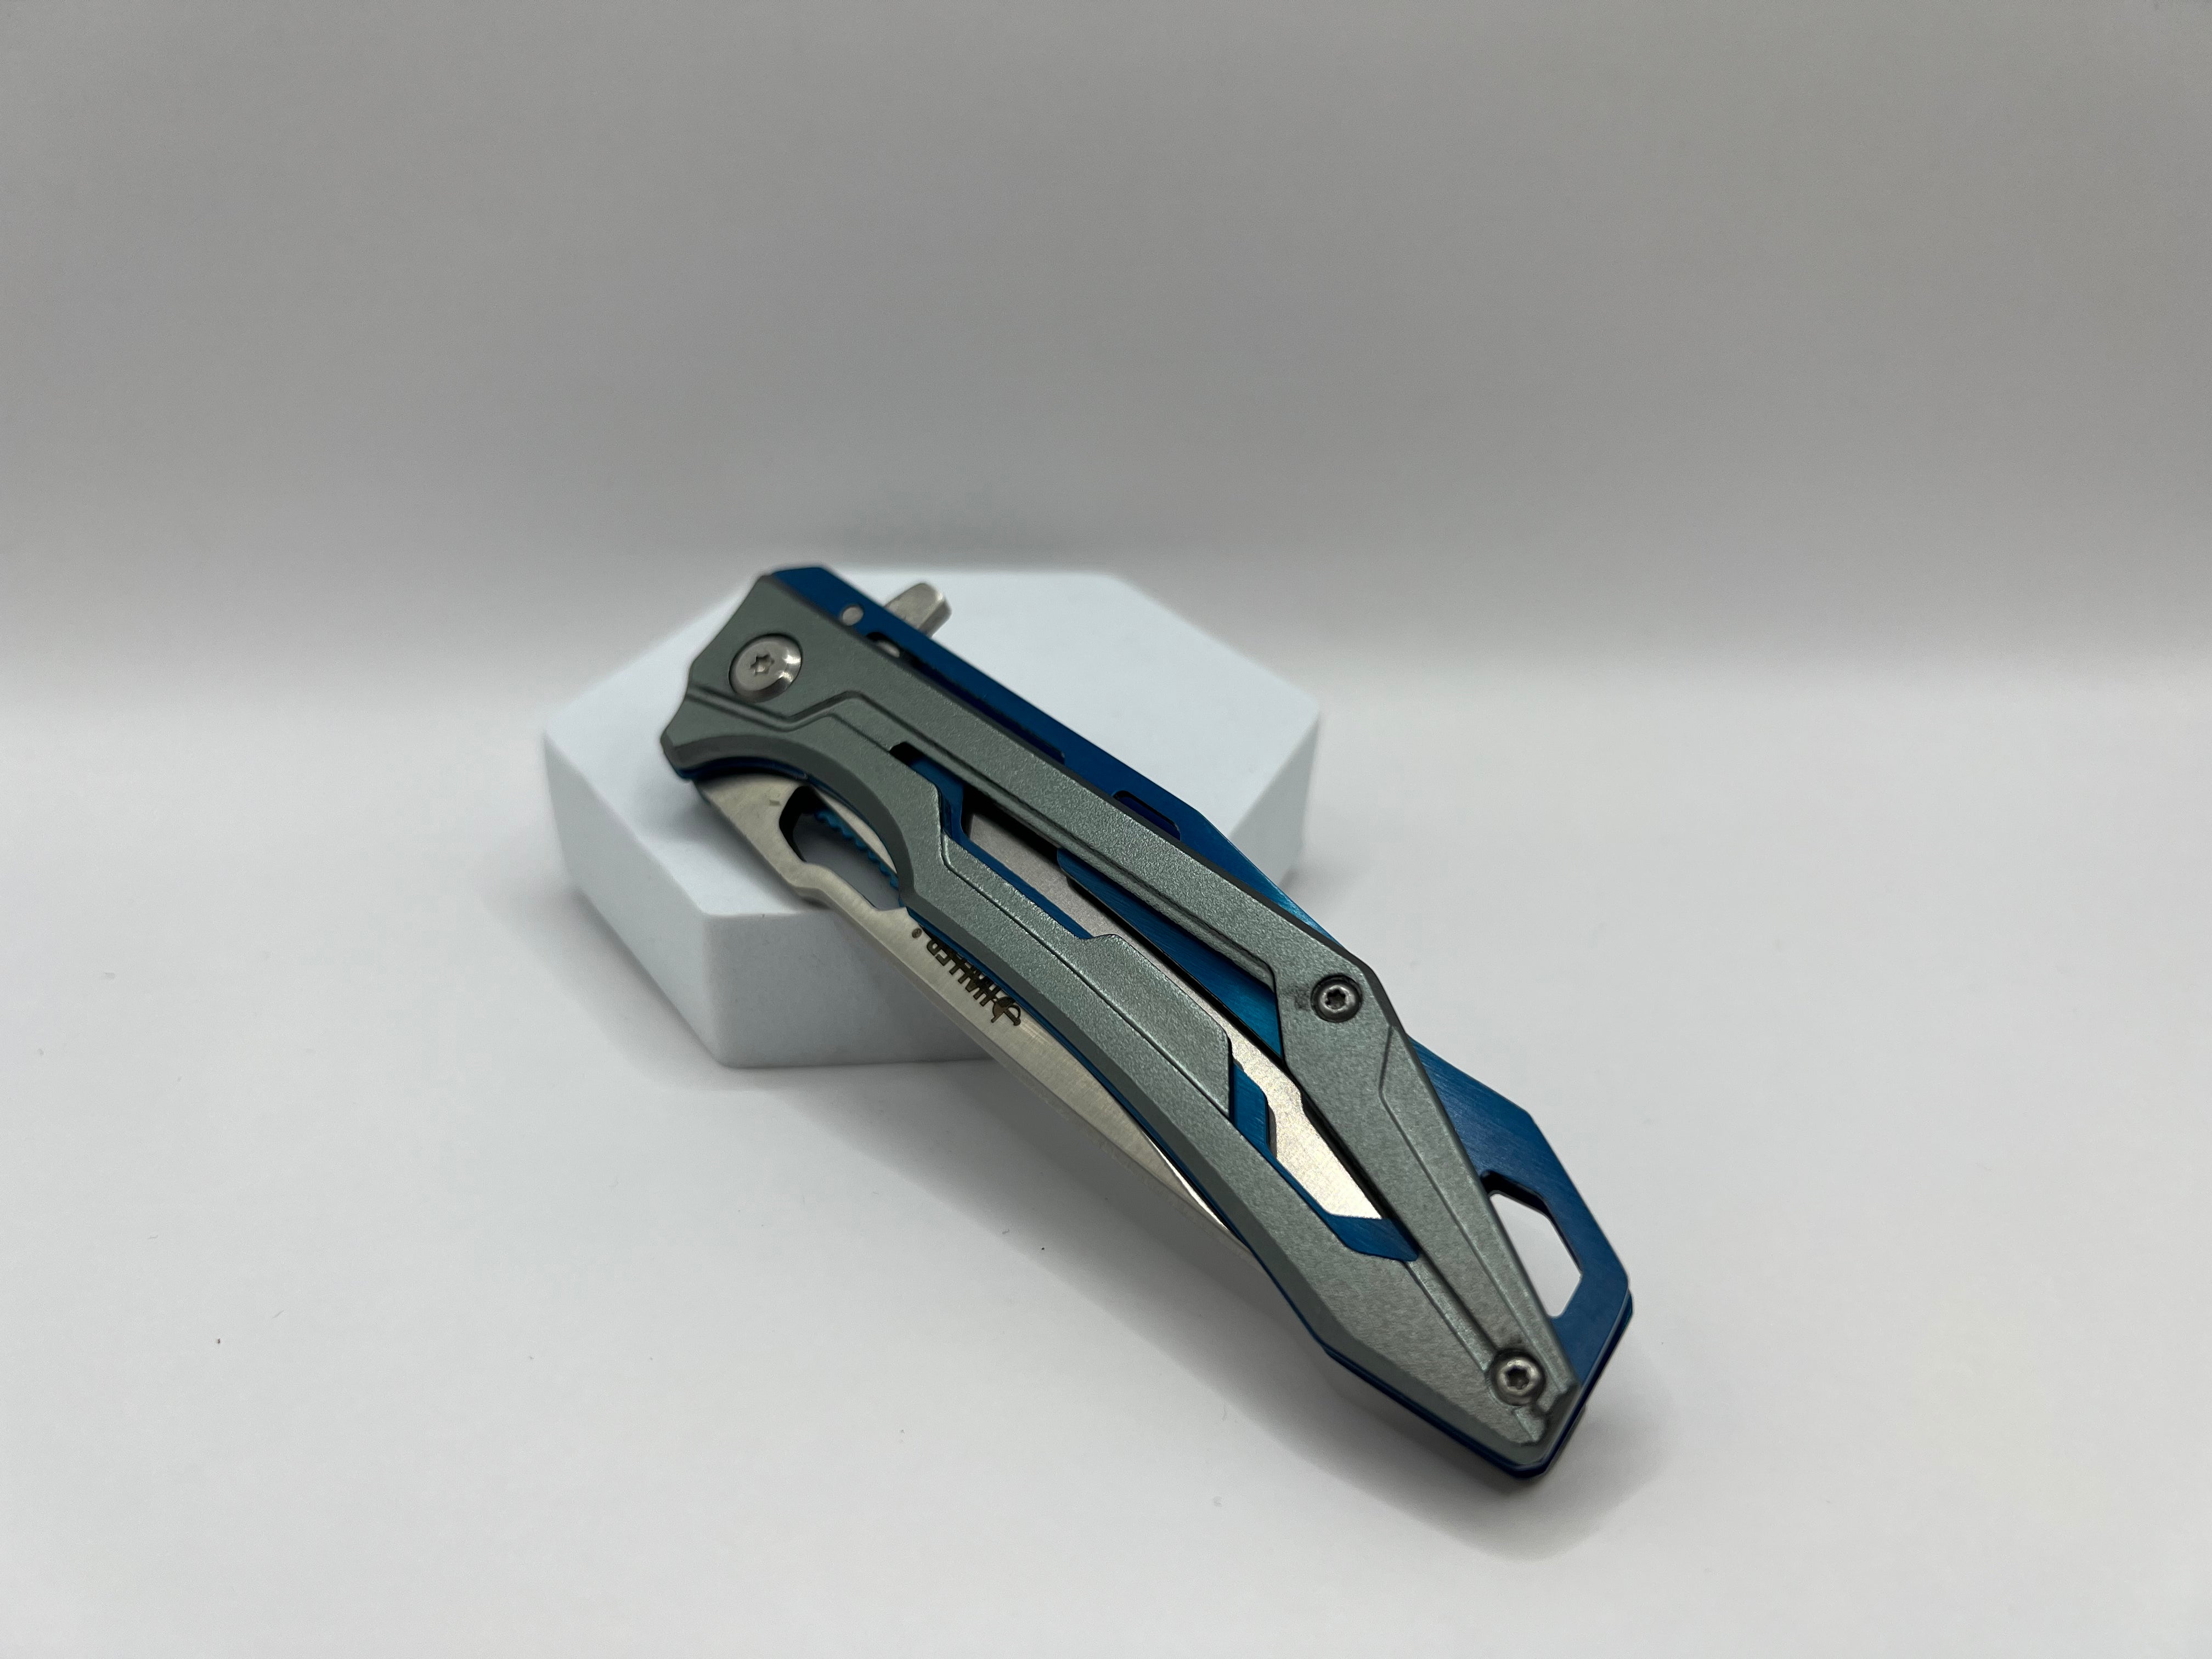 Stilvoll und zuverlässig - Das Metall-Taschenmesser in elegantem Design